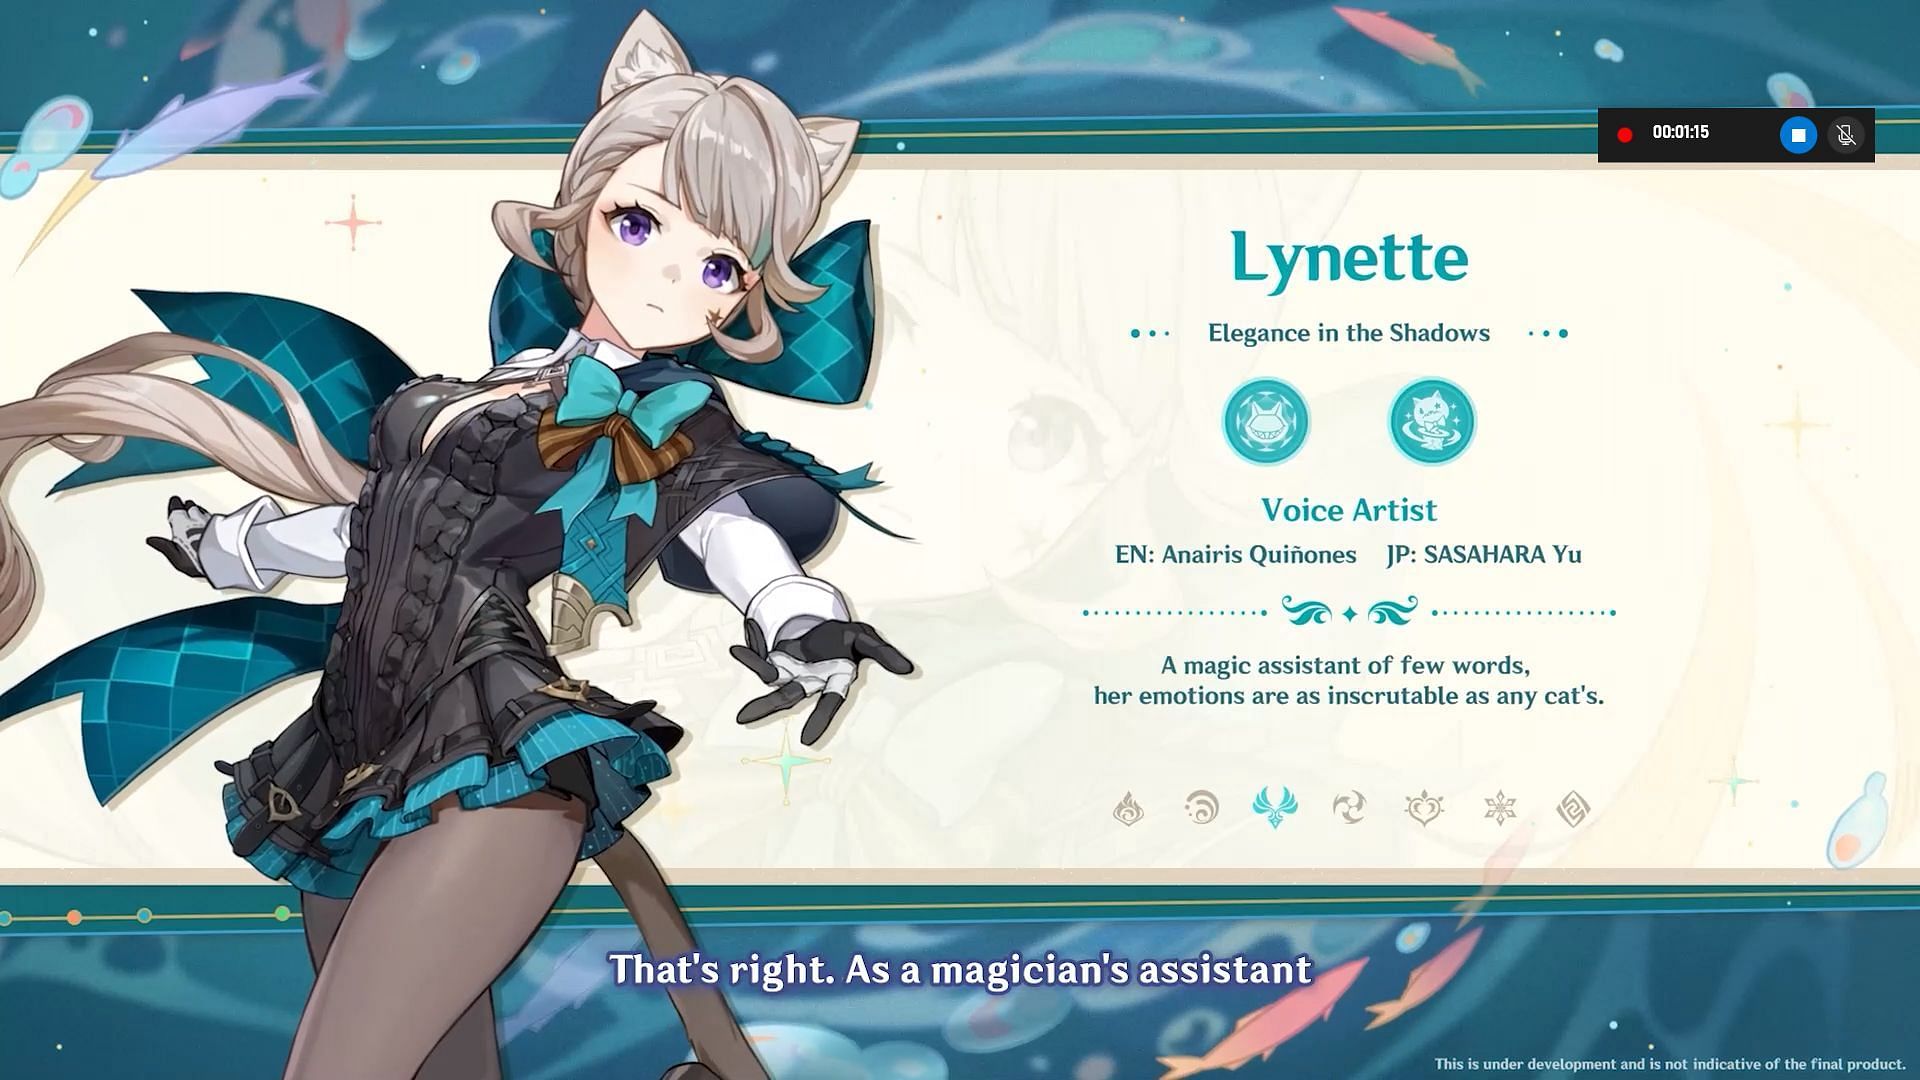 Lynette is a 4-star unit (Image via HoYoverse)